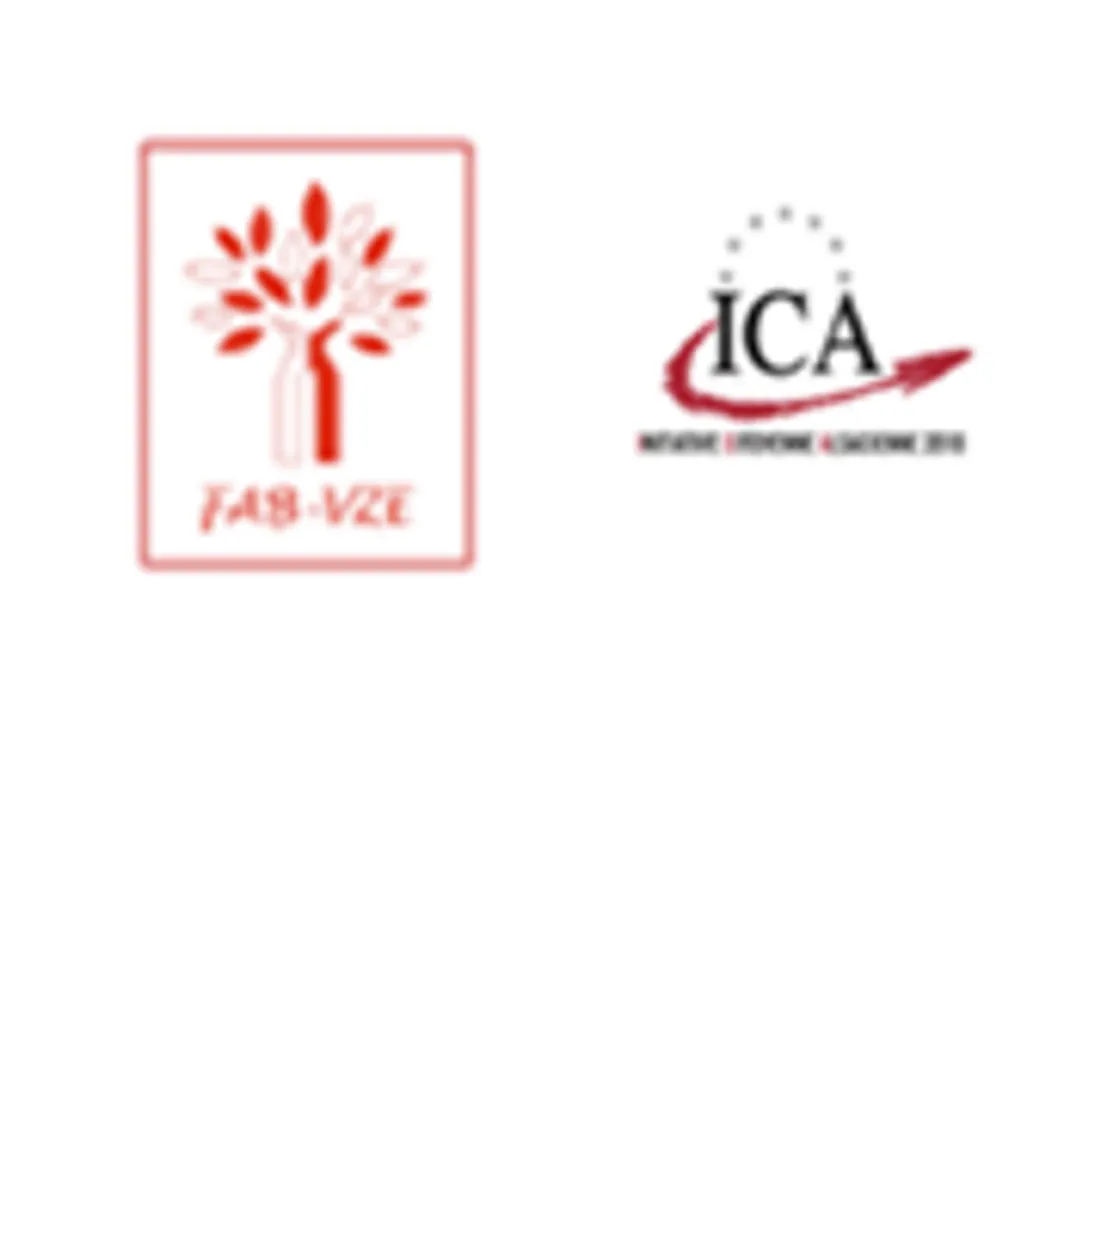 la fédération Alsace bilingue (FAB) et l’initiative citoyenne alsacienne (ICA)